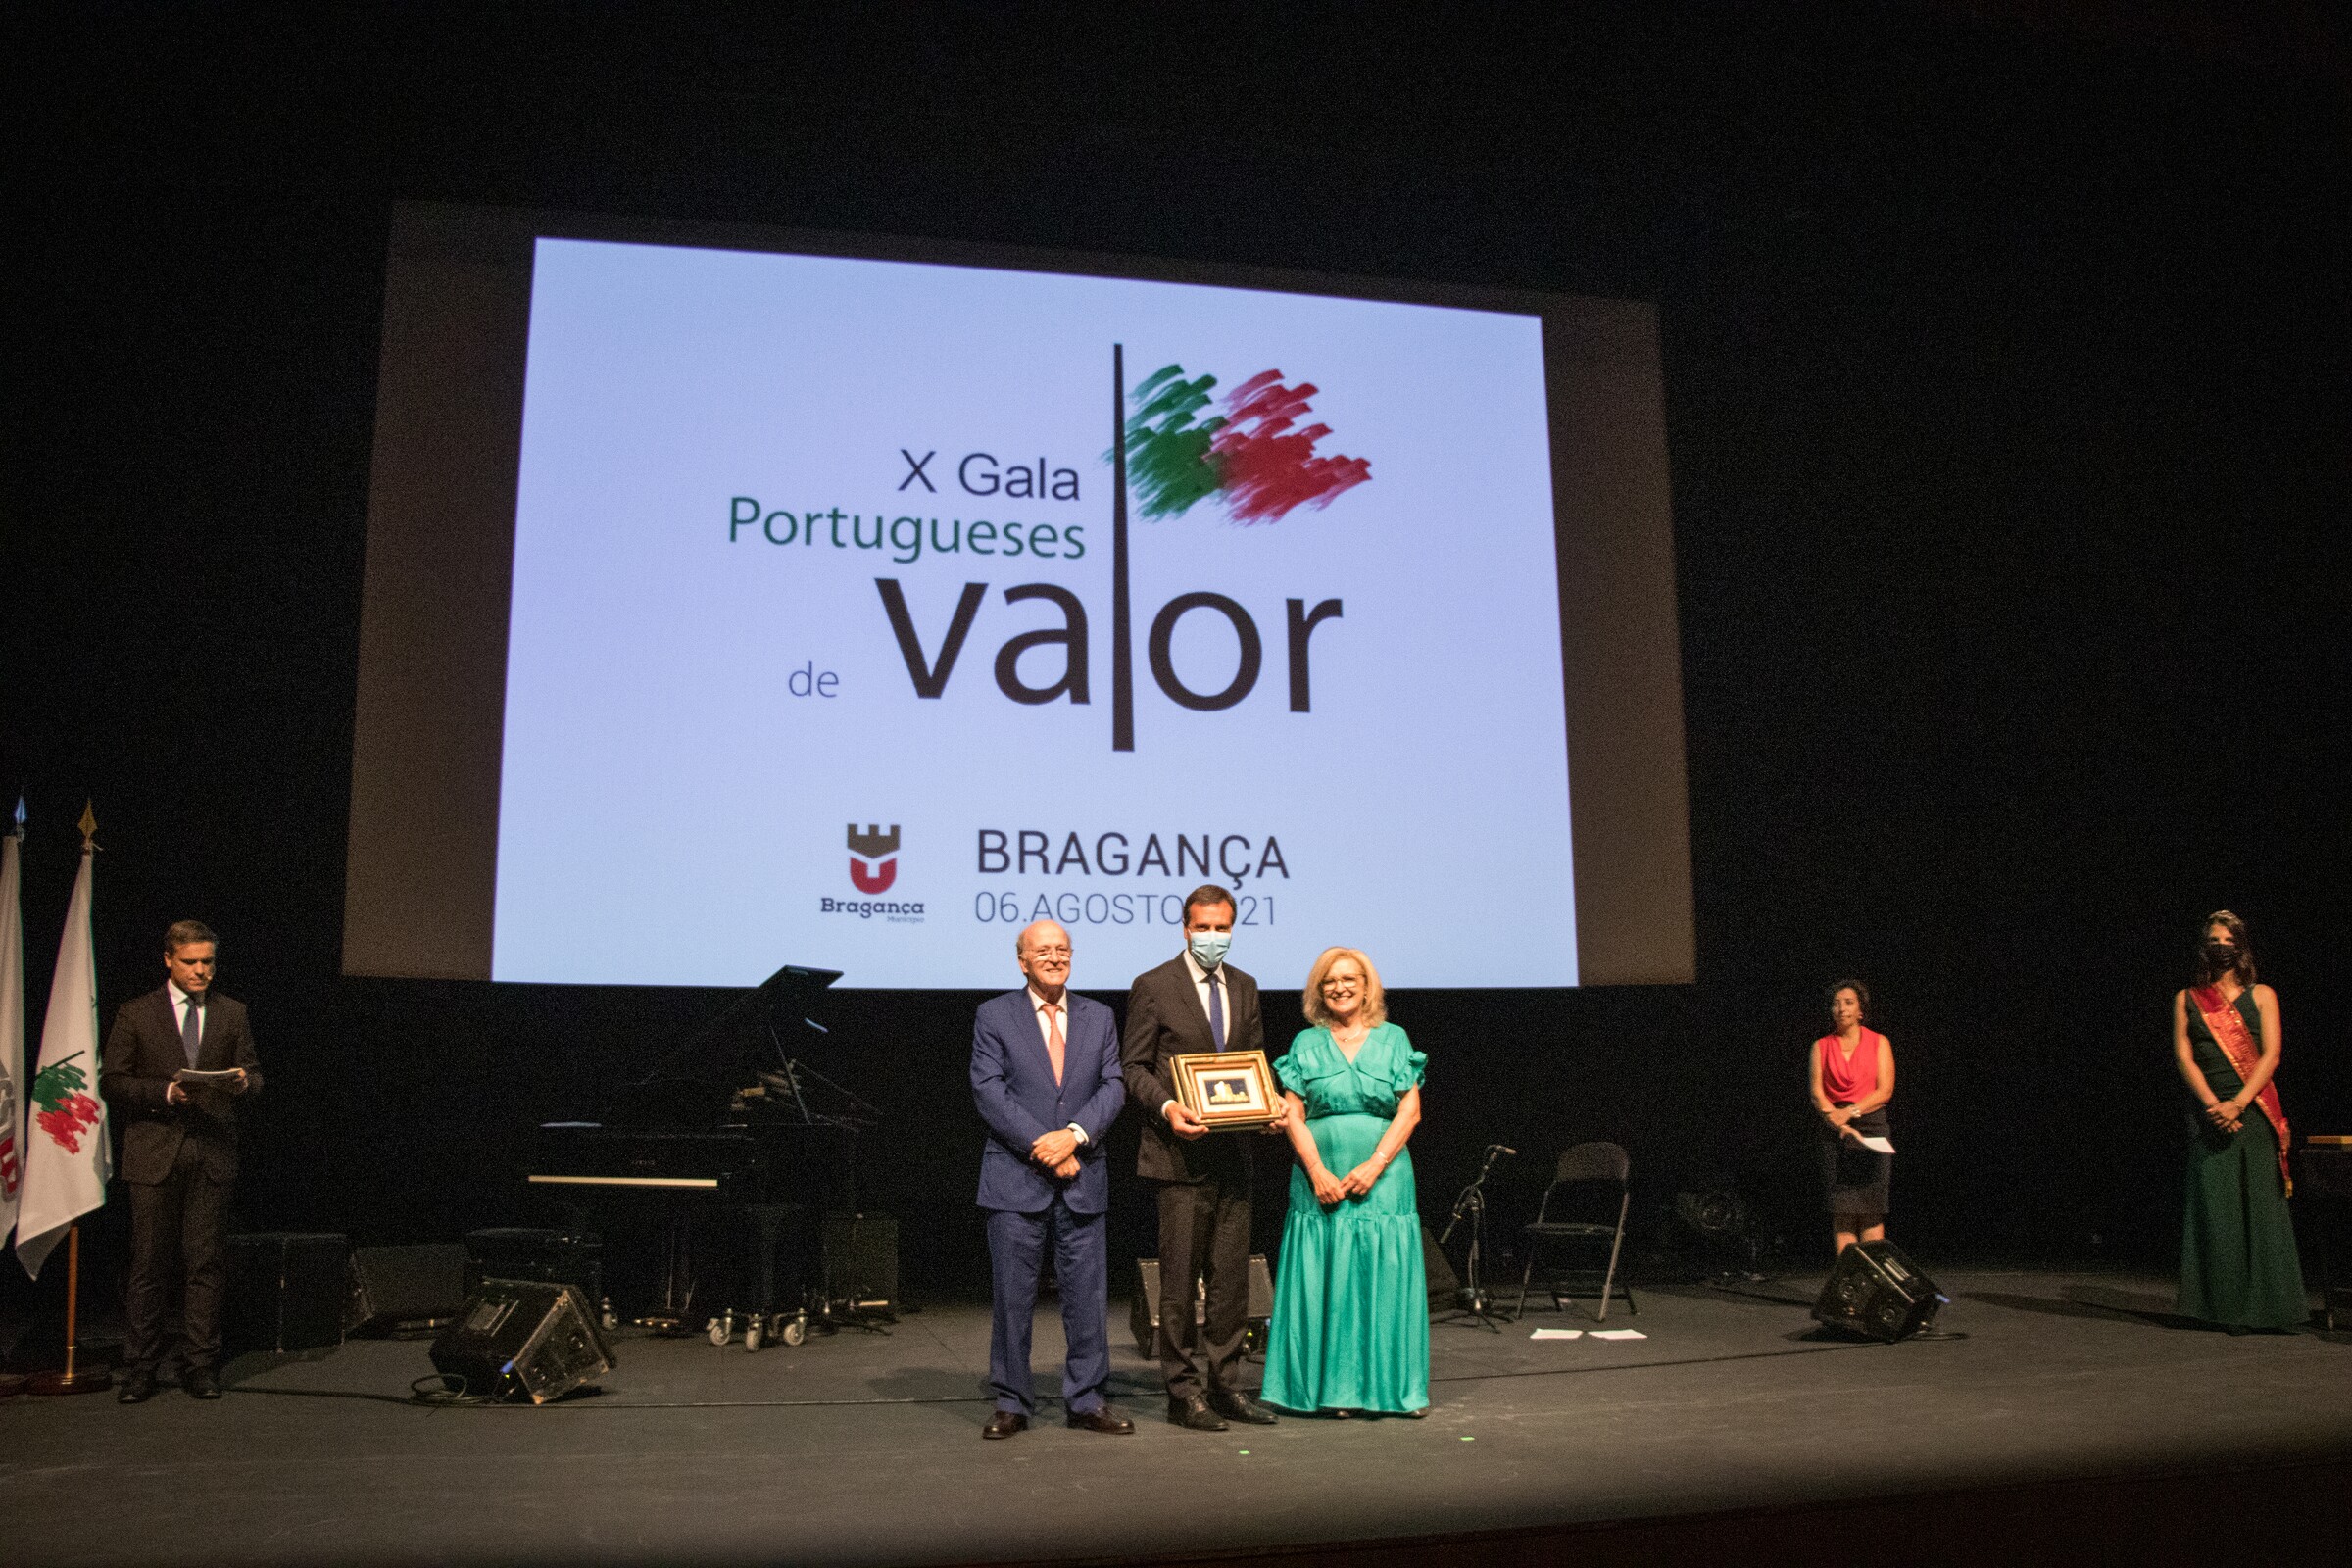 Mérito dos “Portugueses de Valor” da diáspora enaltecido em Bragança